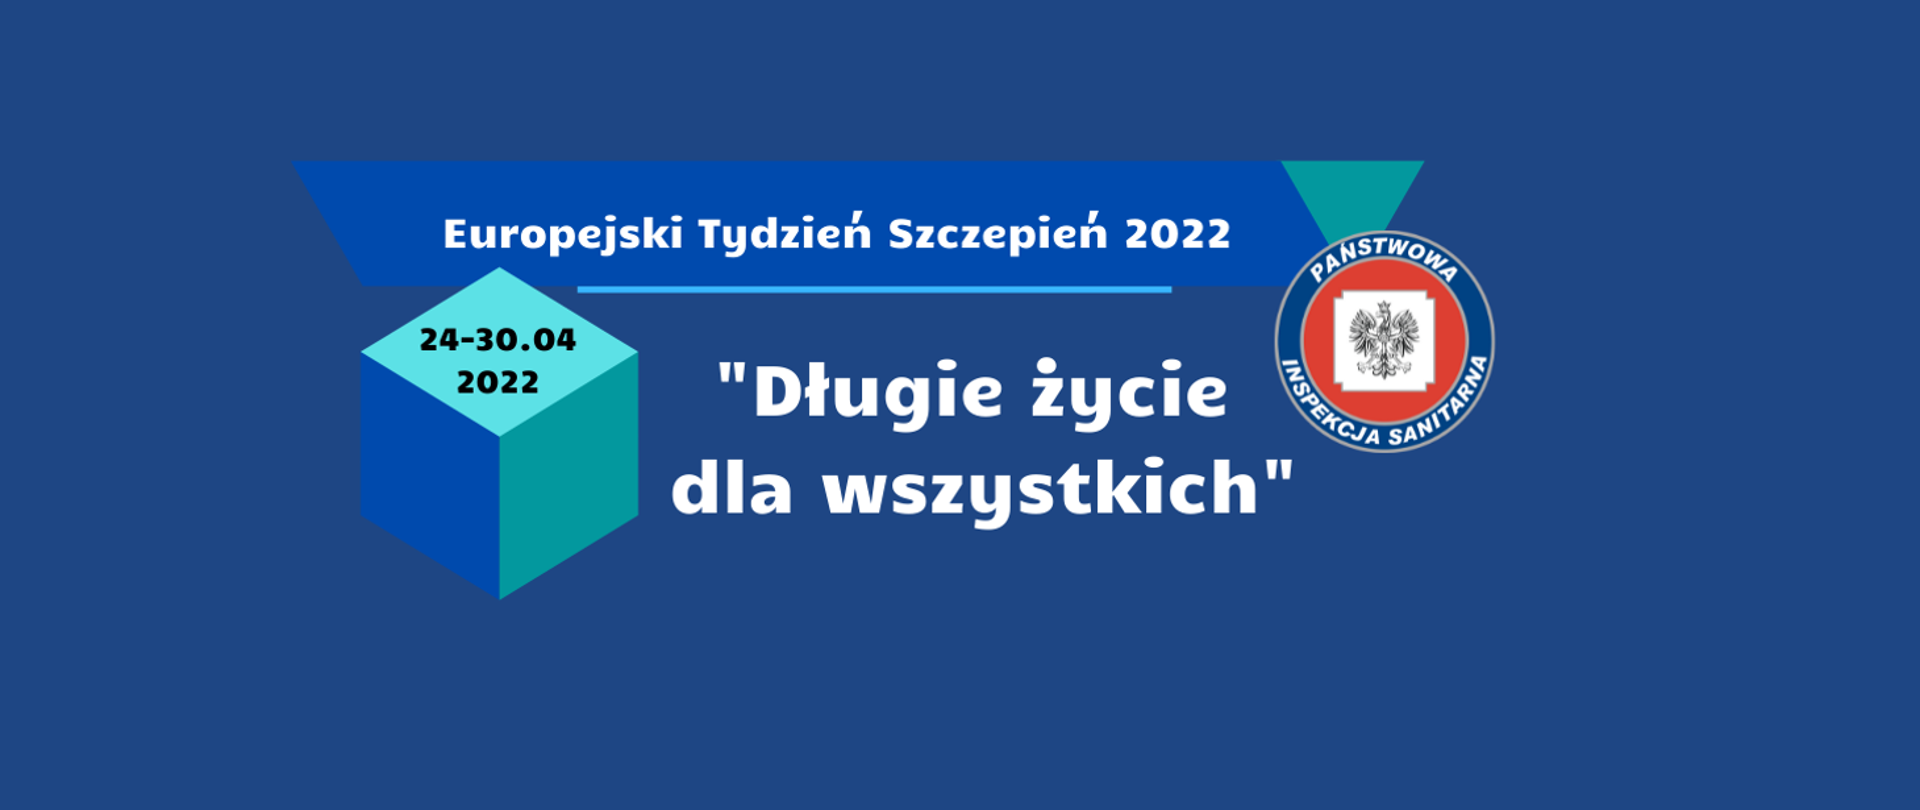 Logo programu Europejski tydzień szczepień 2022, niebieskie tło, na nim po lewej stornie logo Państwowej Inspekcji Sanitarnej, Na górze napis Europejski Tydzień Szczepień 2022. Pod napisem slogan "Długie życie dla wszystkich".